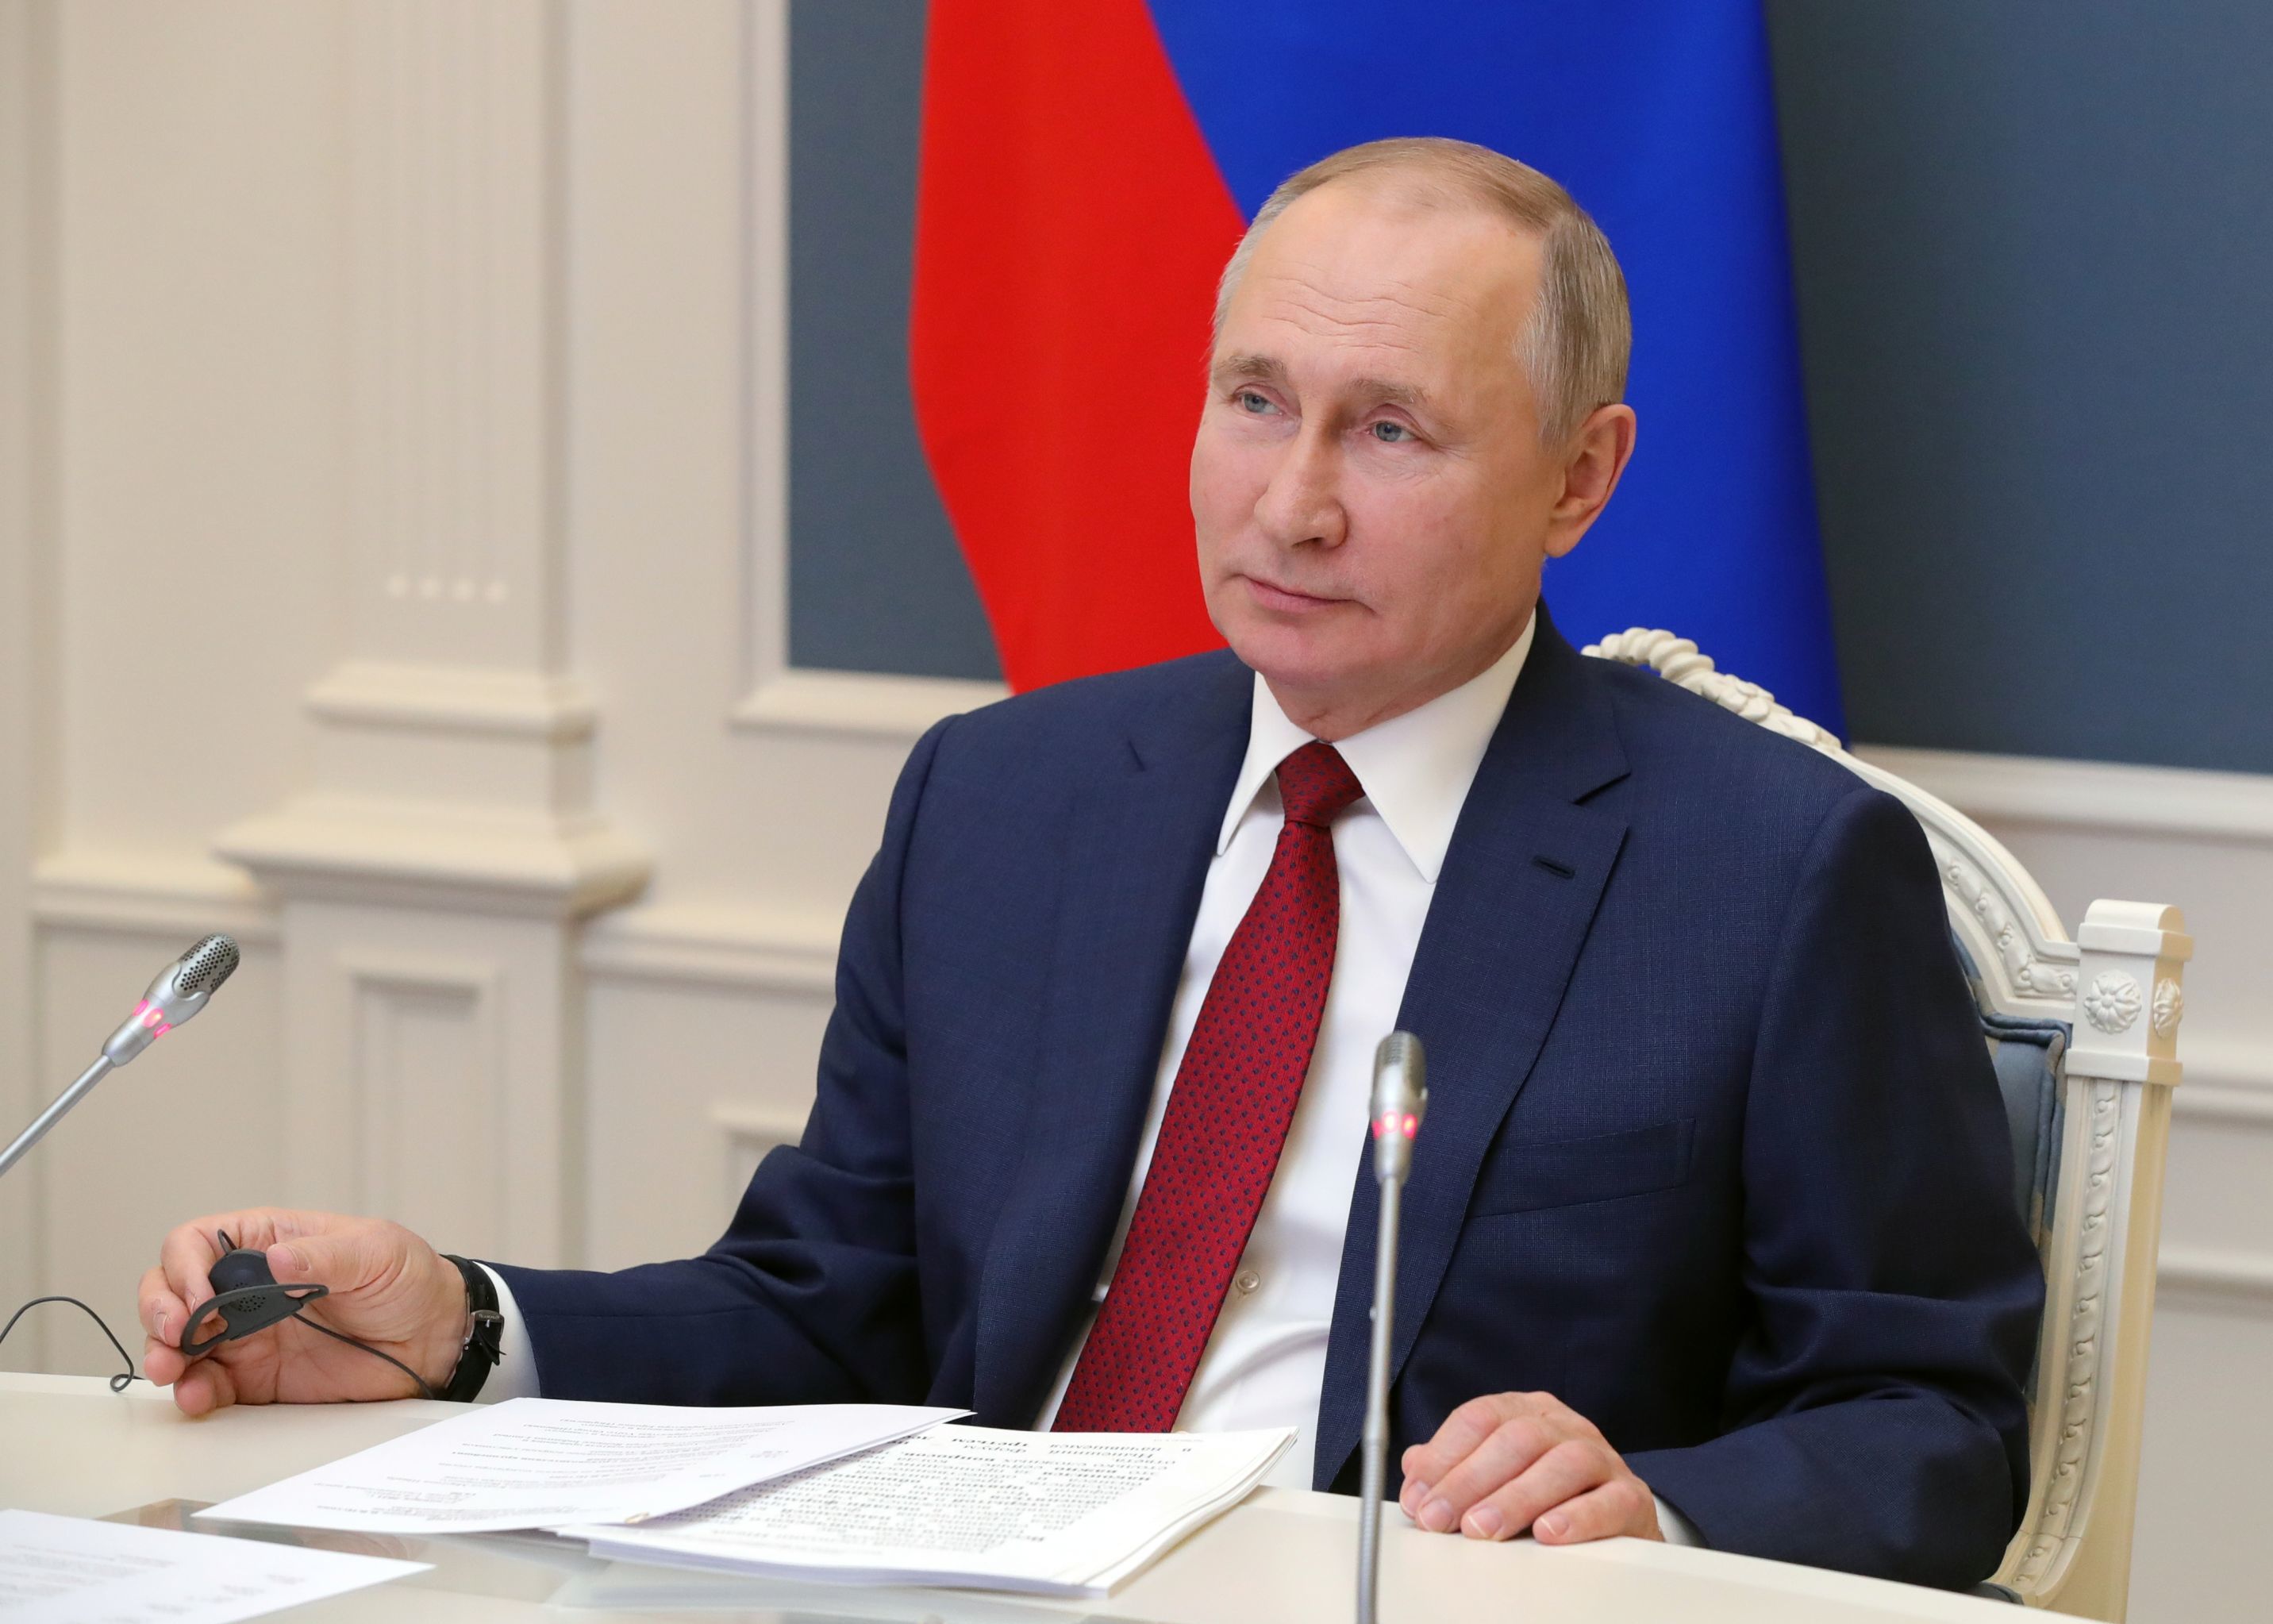 Президент РФ Владимир Путин выступает по видеосвязи на сессии "Давосская повестка дня 2021" Всемирного экономического форума (ВЭФ), 27 января 2021